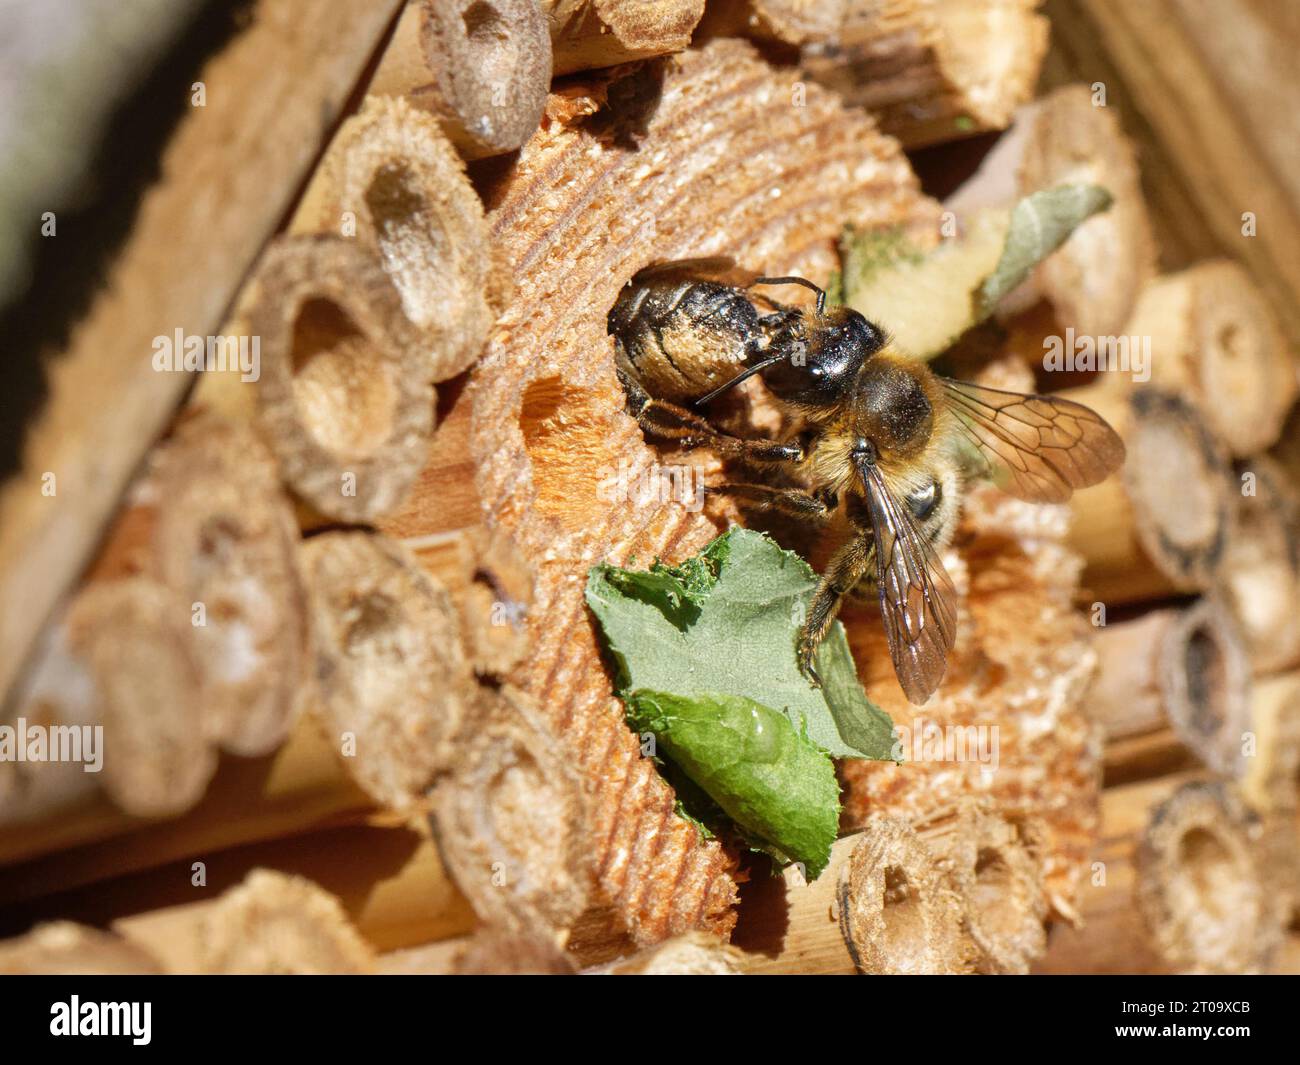 Una femmina di taglialegna (Megachile ligniseca) che attacca un'altra con cui è in competizione per una tana di nidi all'interno di un hotel di insetti, Regno Unito. Foto Stock